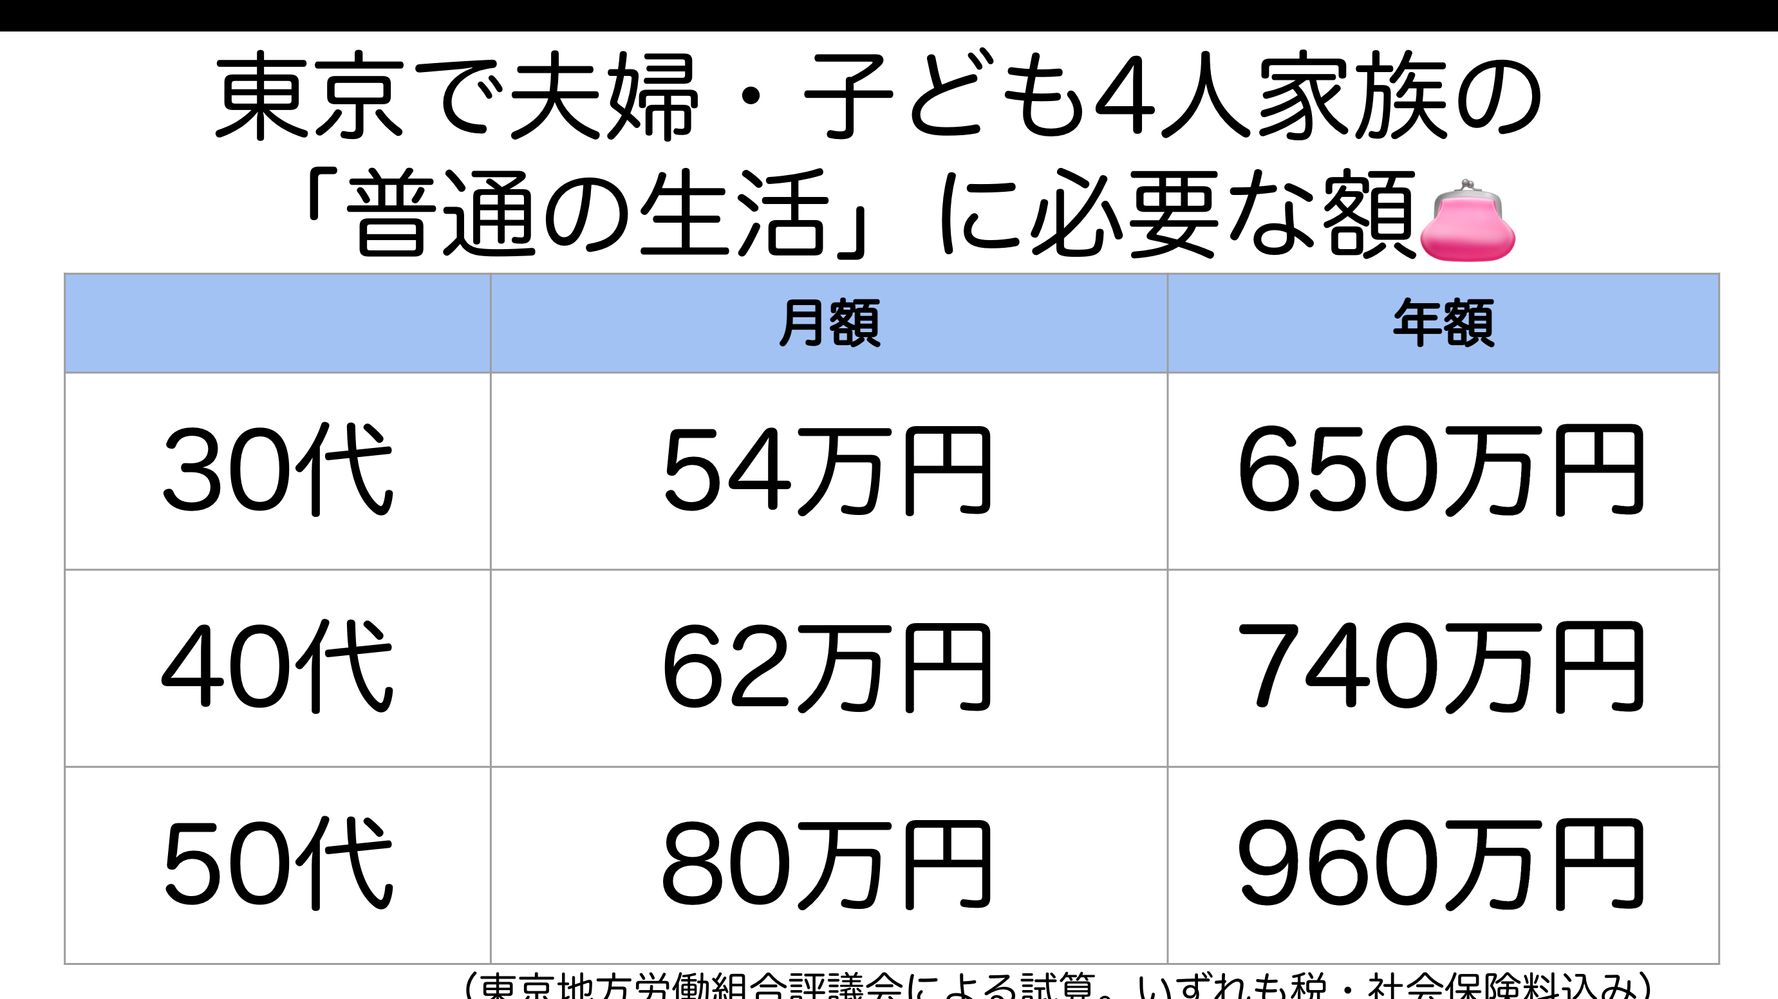 普通の生活 東京の子育て世帯でいくら 30代で月54万必要です 労組団体試算 ハフポスト News